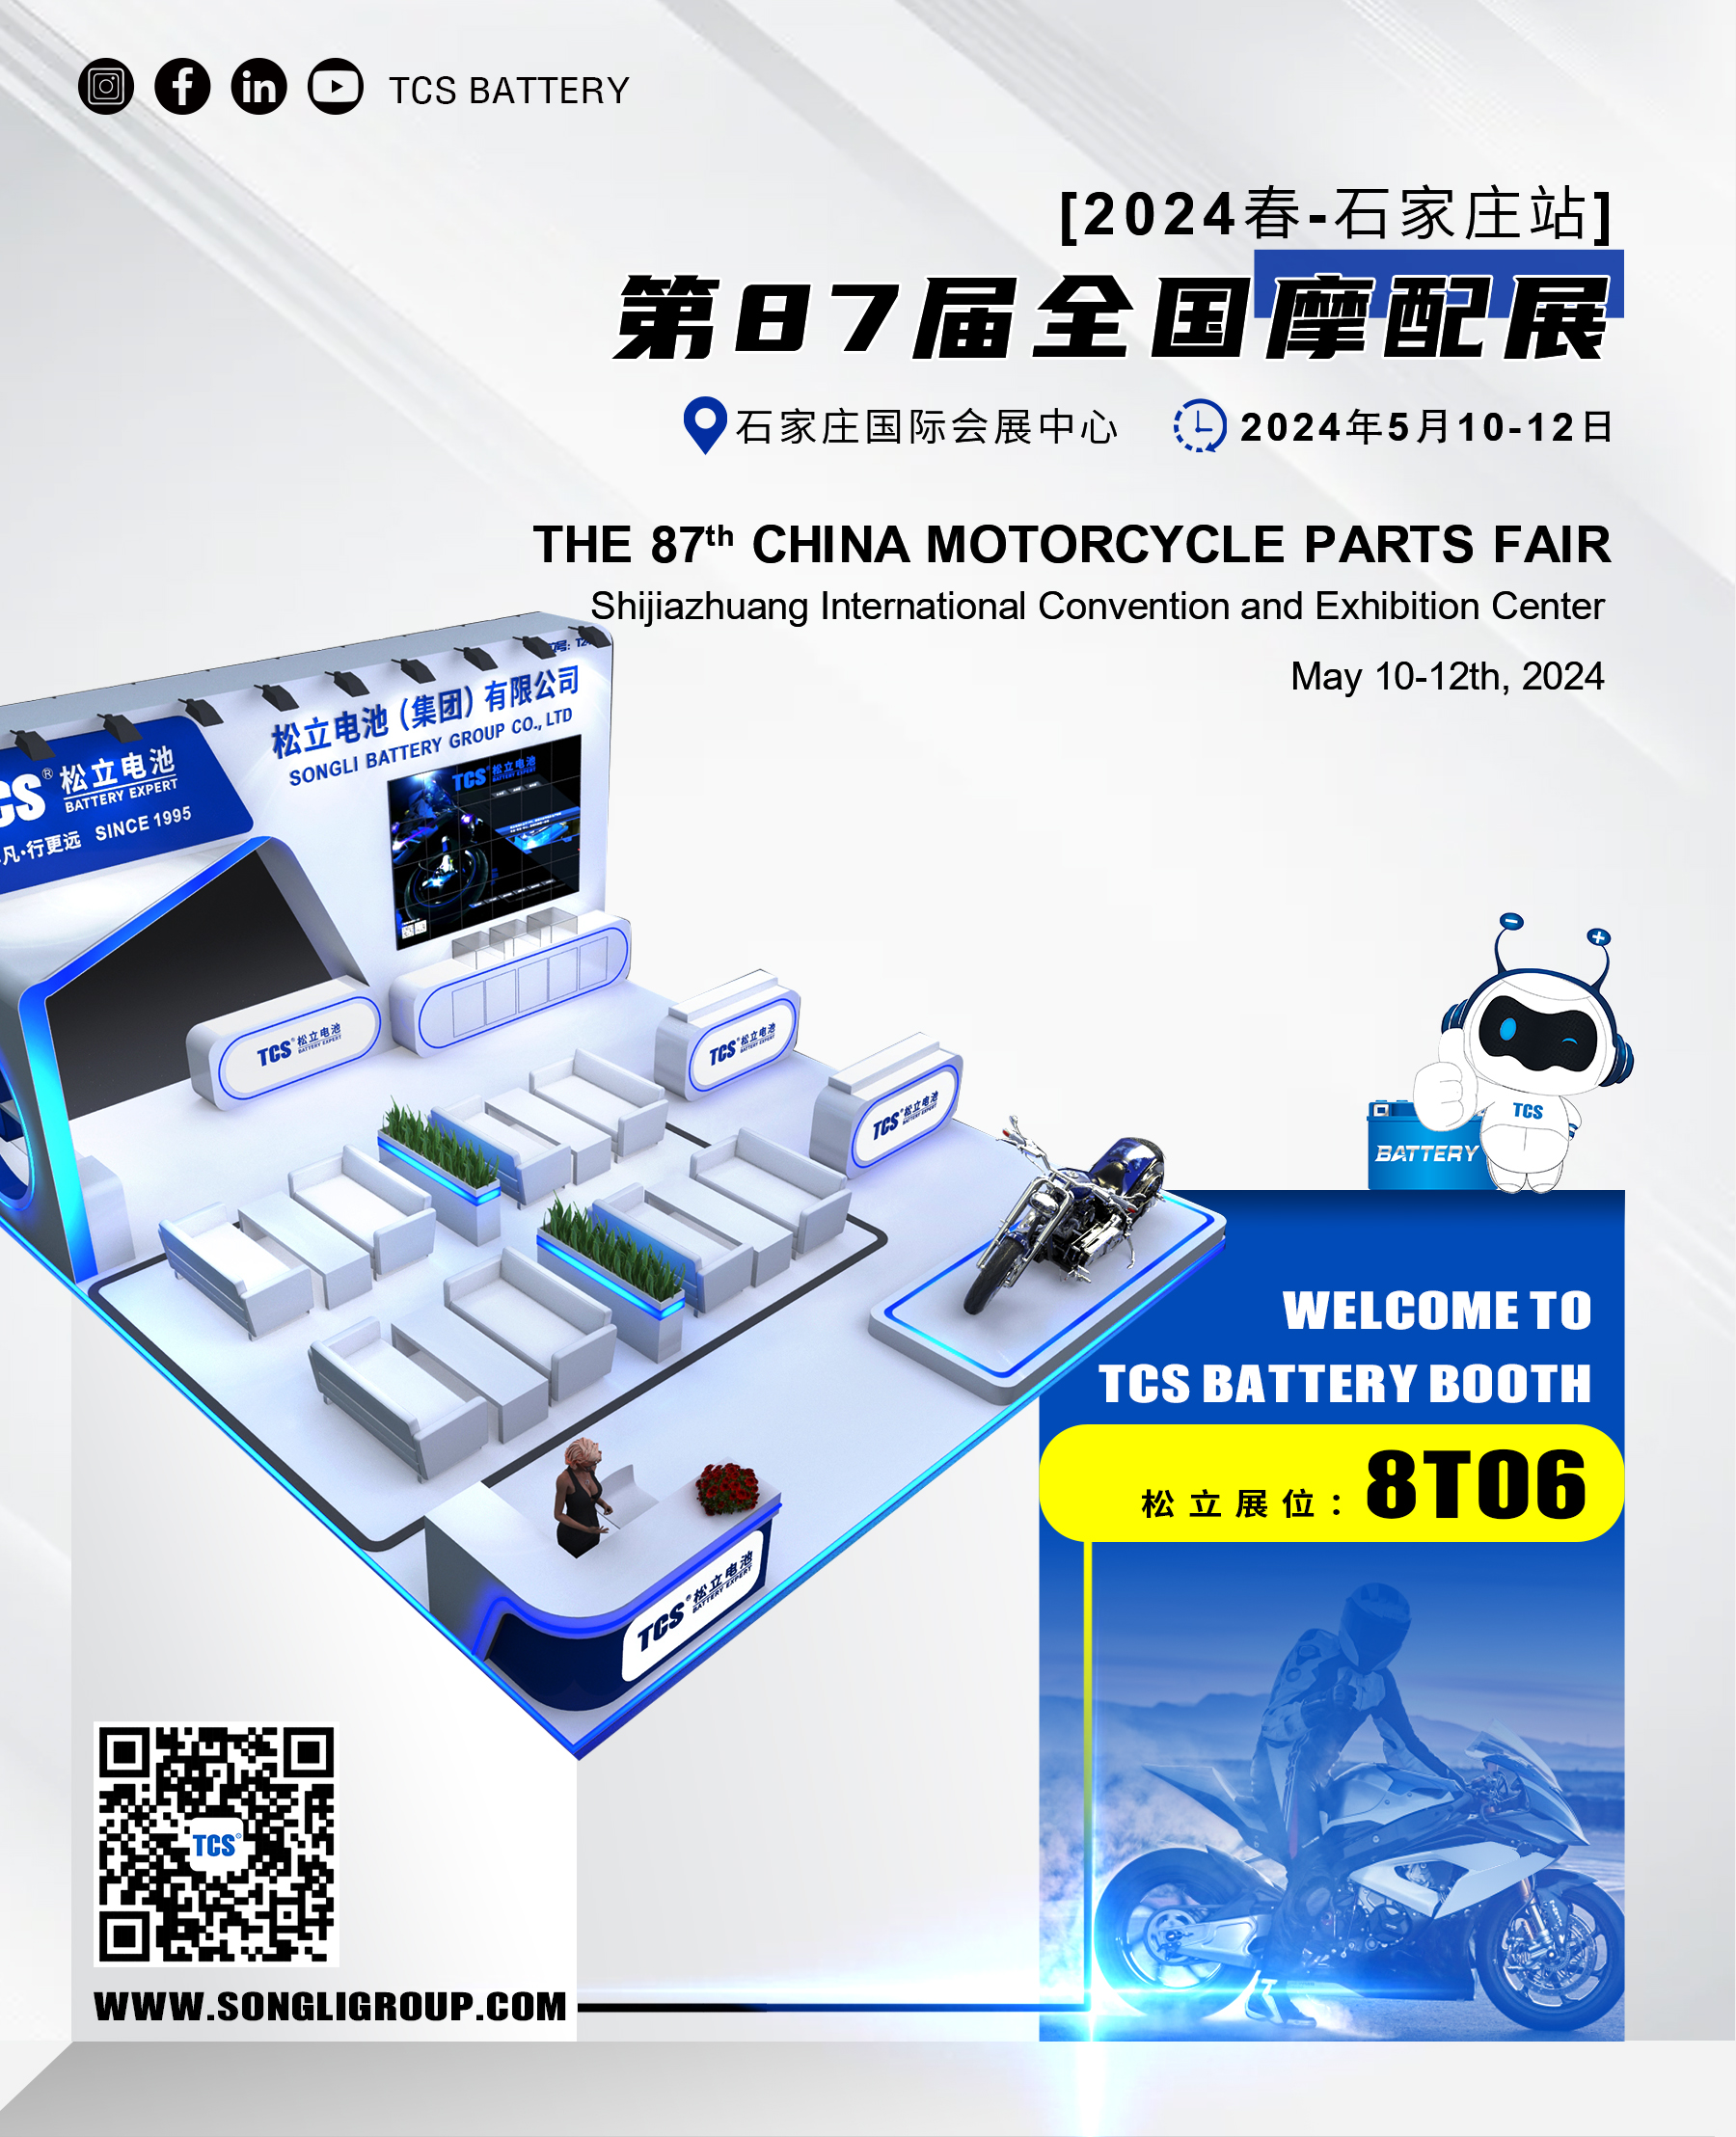 Den 87:e China Motorcycle Parts Fair